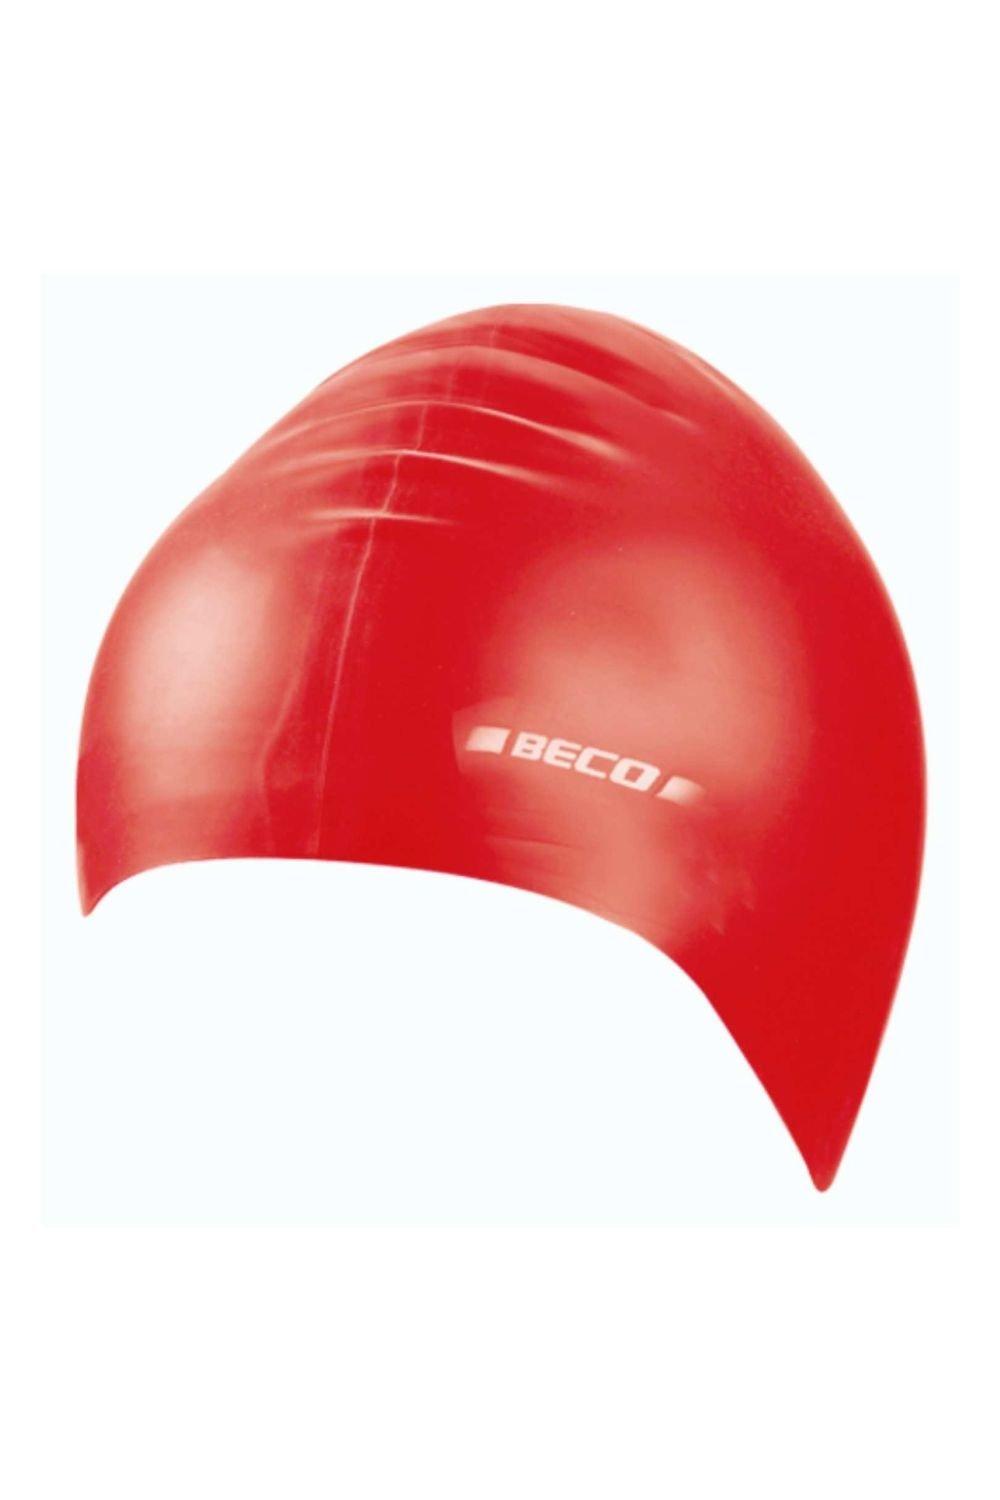 Силиконовая шапочка для плавания для взрослых Beco, красный шапочки для плавания женская шапочка для плавания с короткими волосами детская шапочка для плавания эластичная шапочка для плавания шап